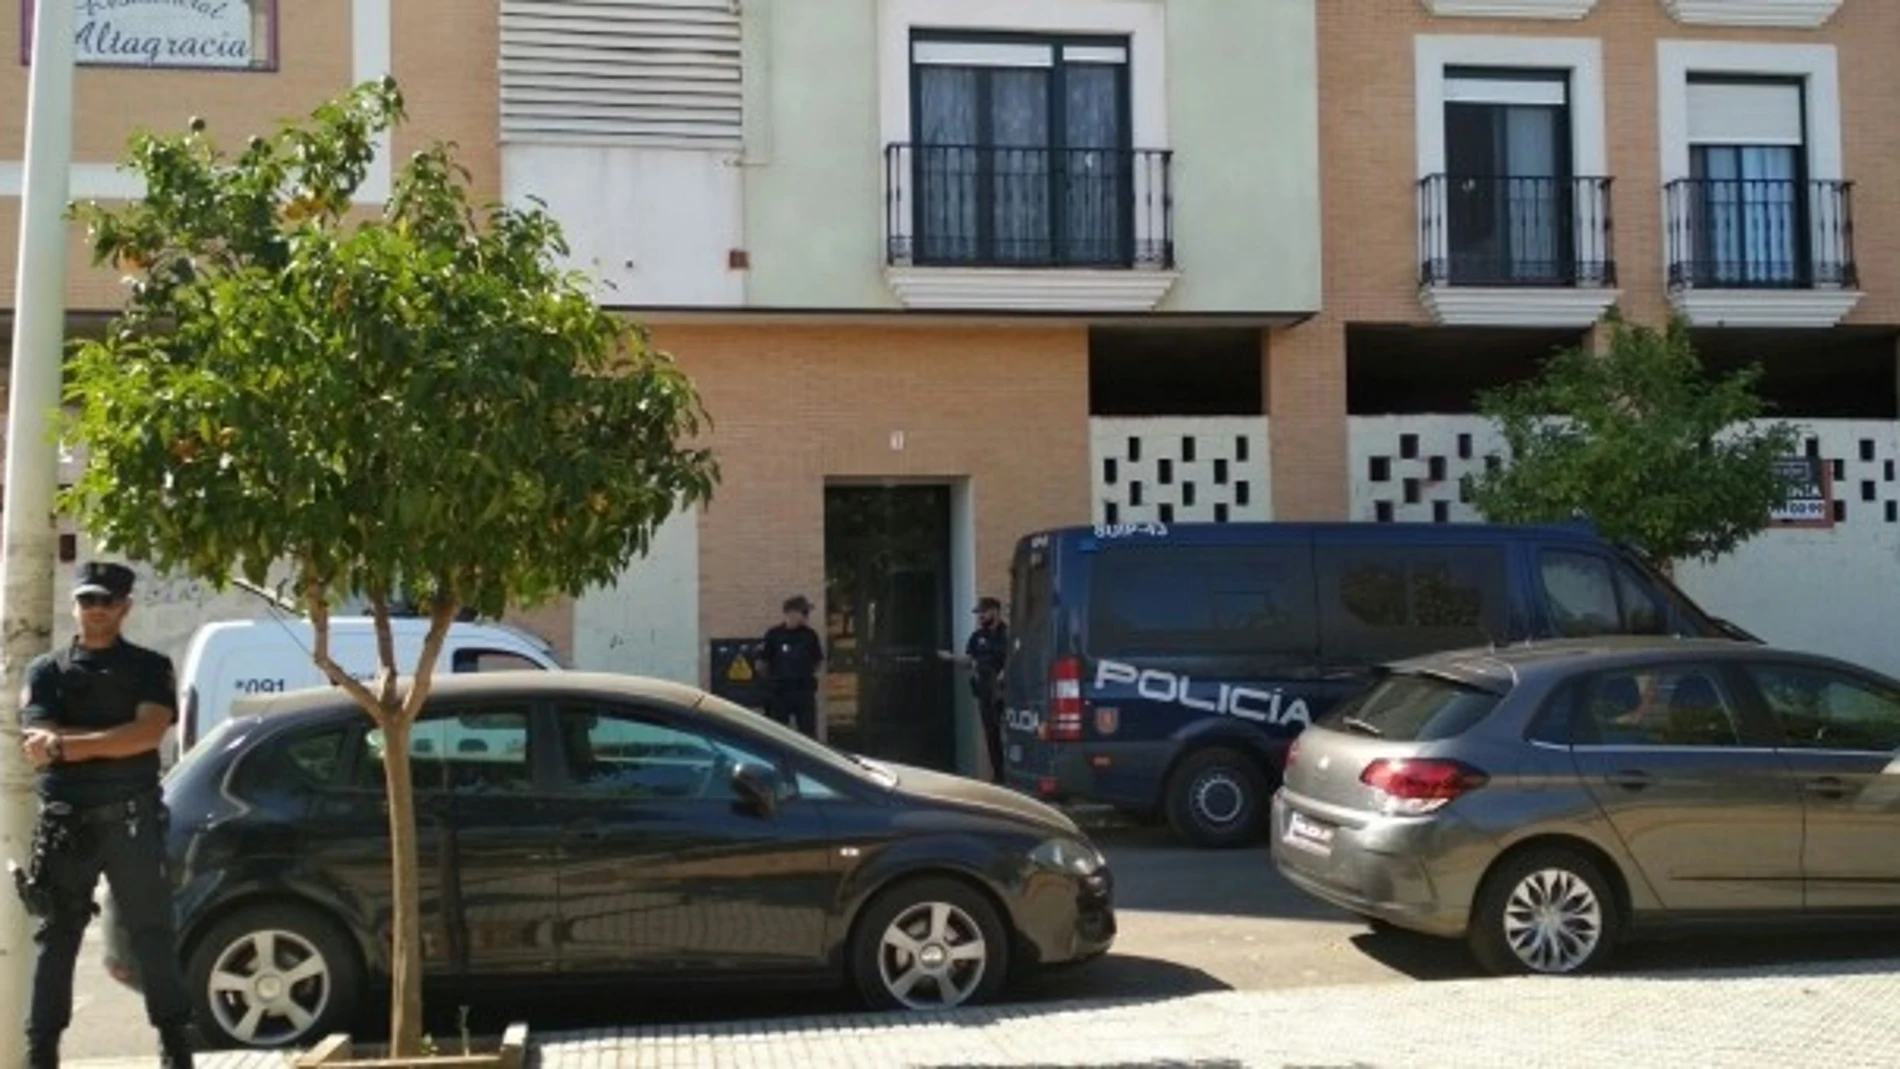 La policía, movilizada en Mérida